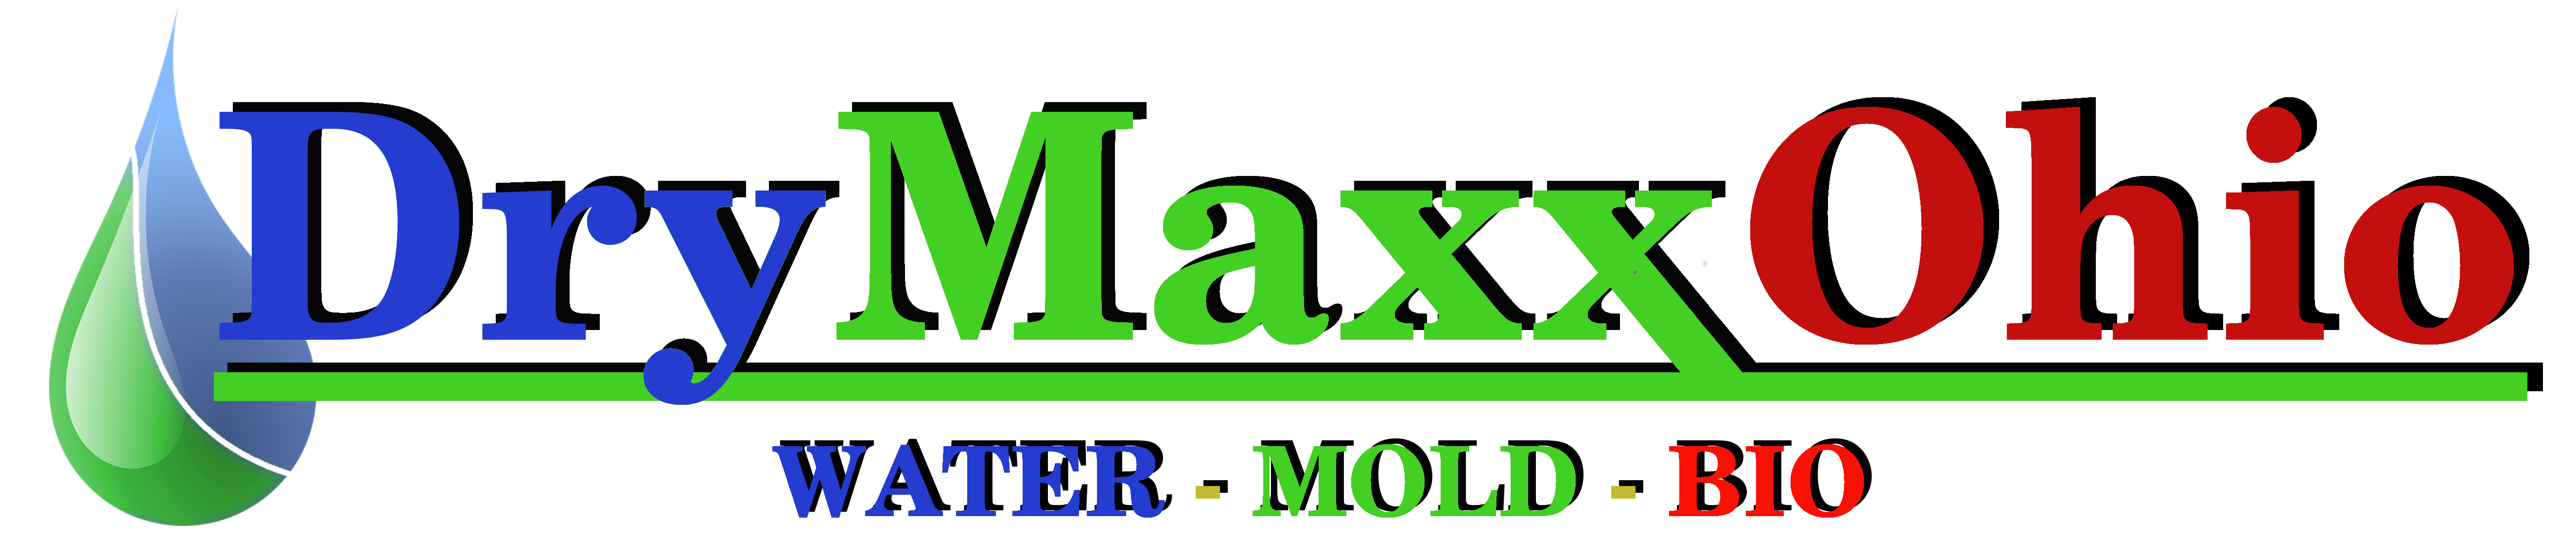 Dry Maxx Ohio, Inc. Logo